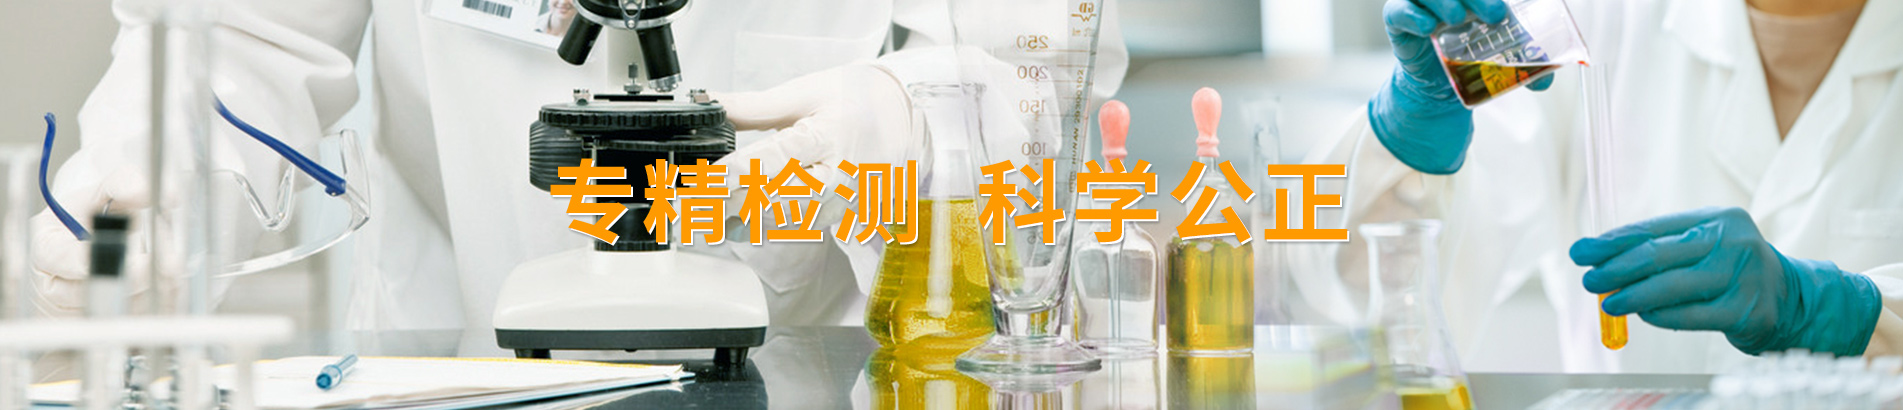 上海润凯油液监测有限公司